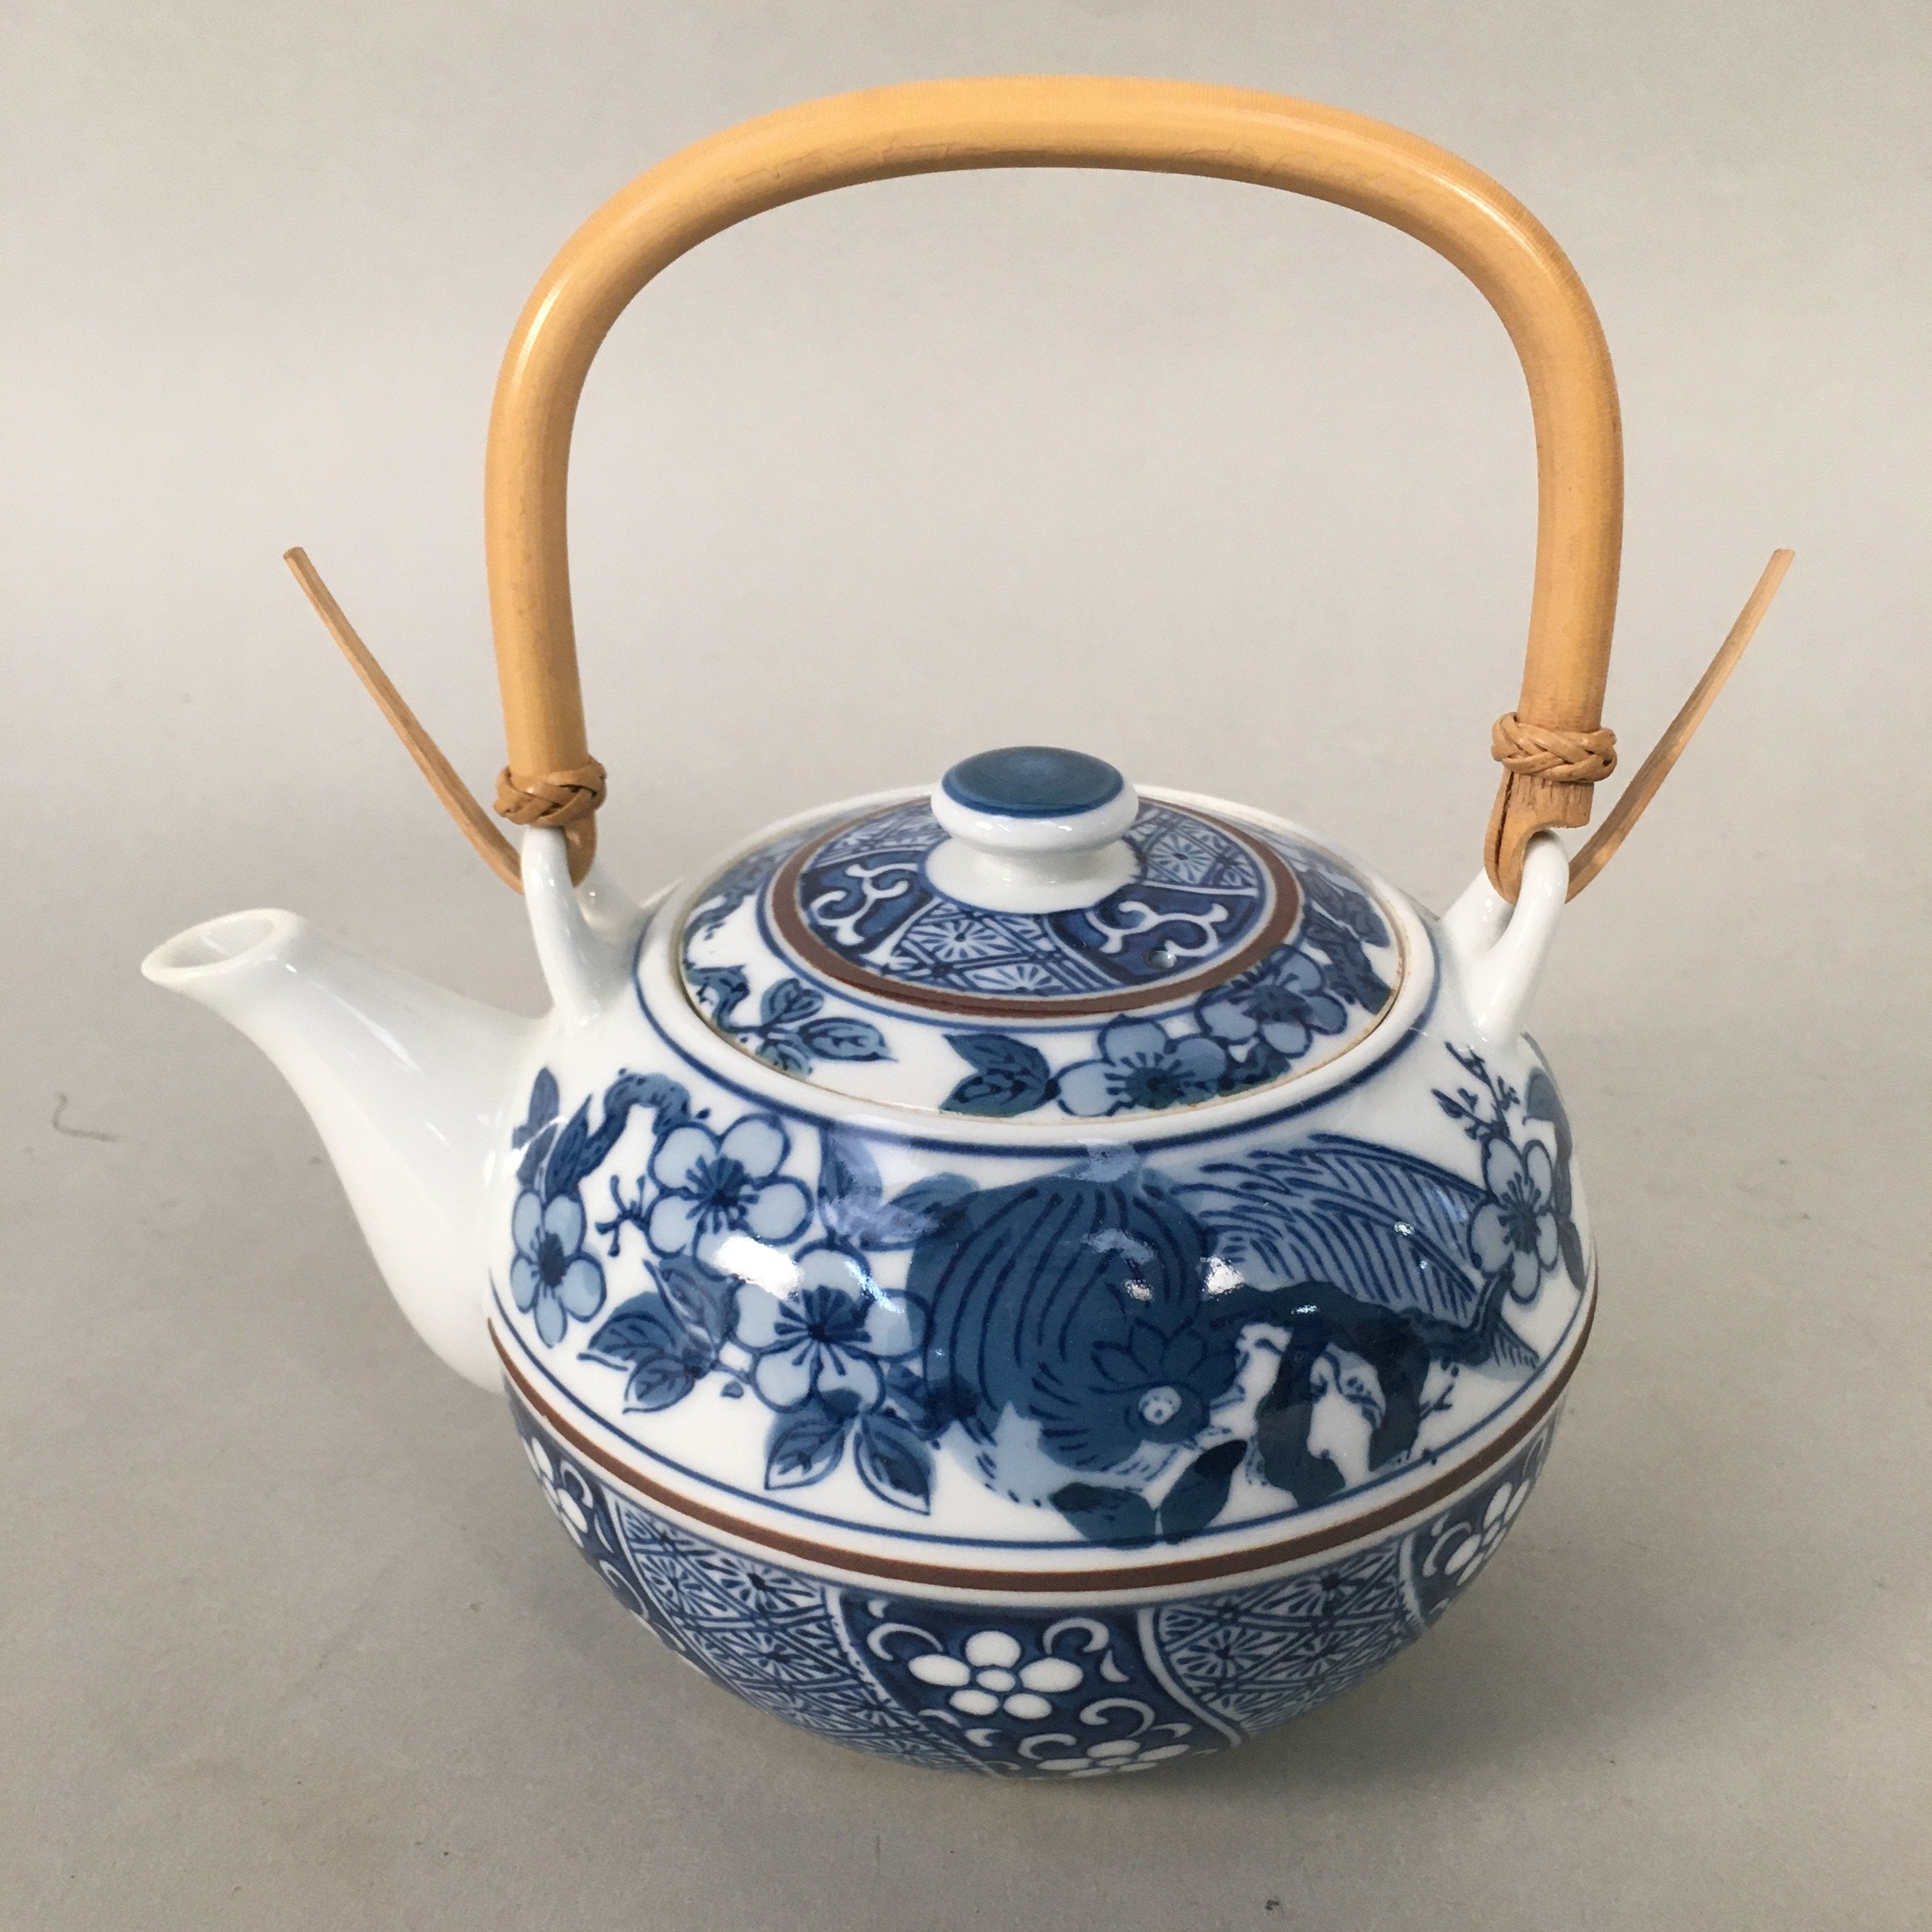 Vintage BRANDWARE Japan Stainless Steel Individual Teapot / Coffee